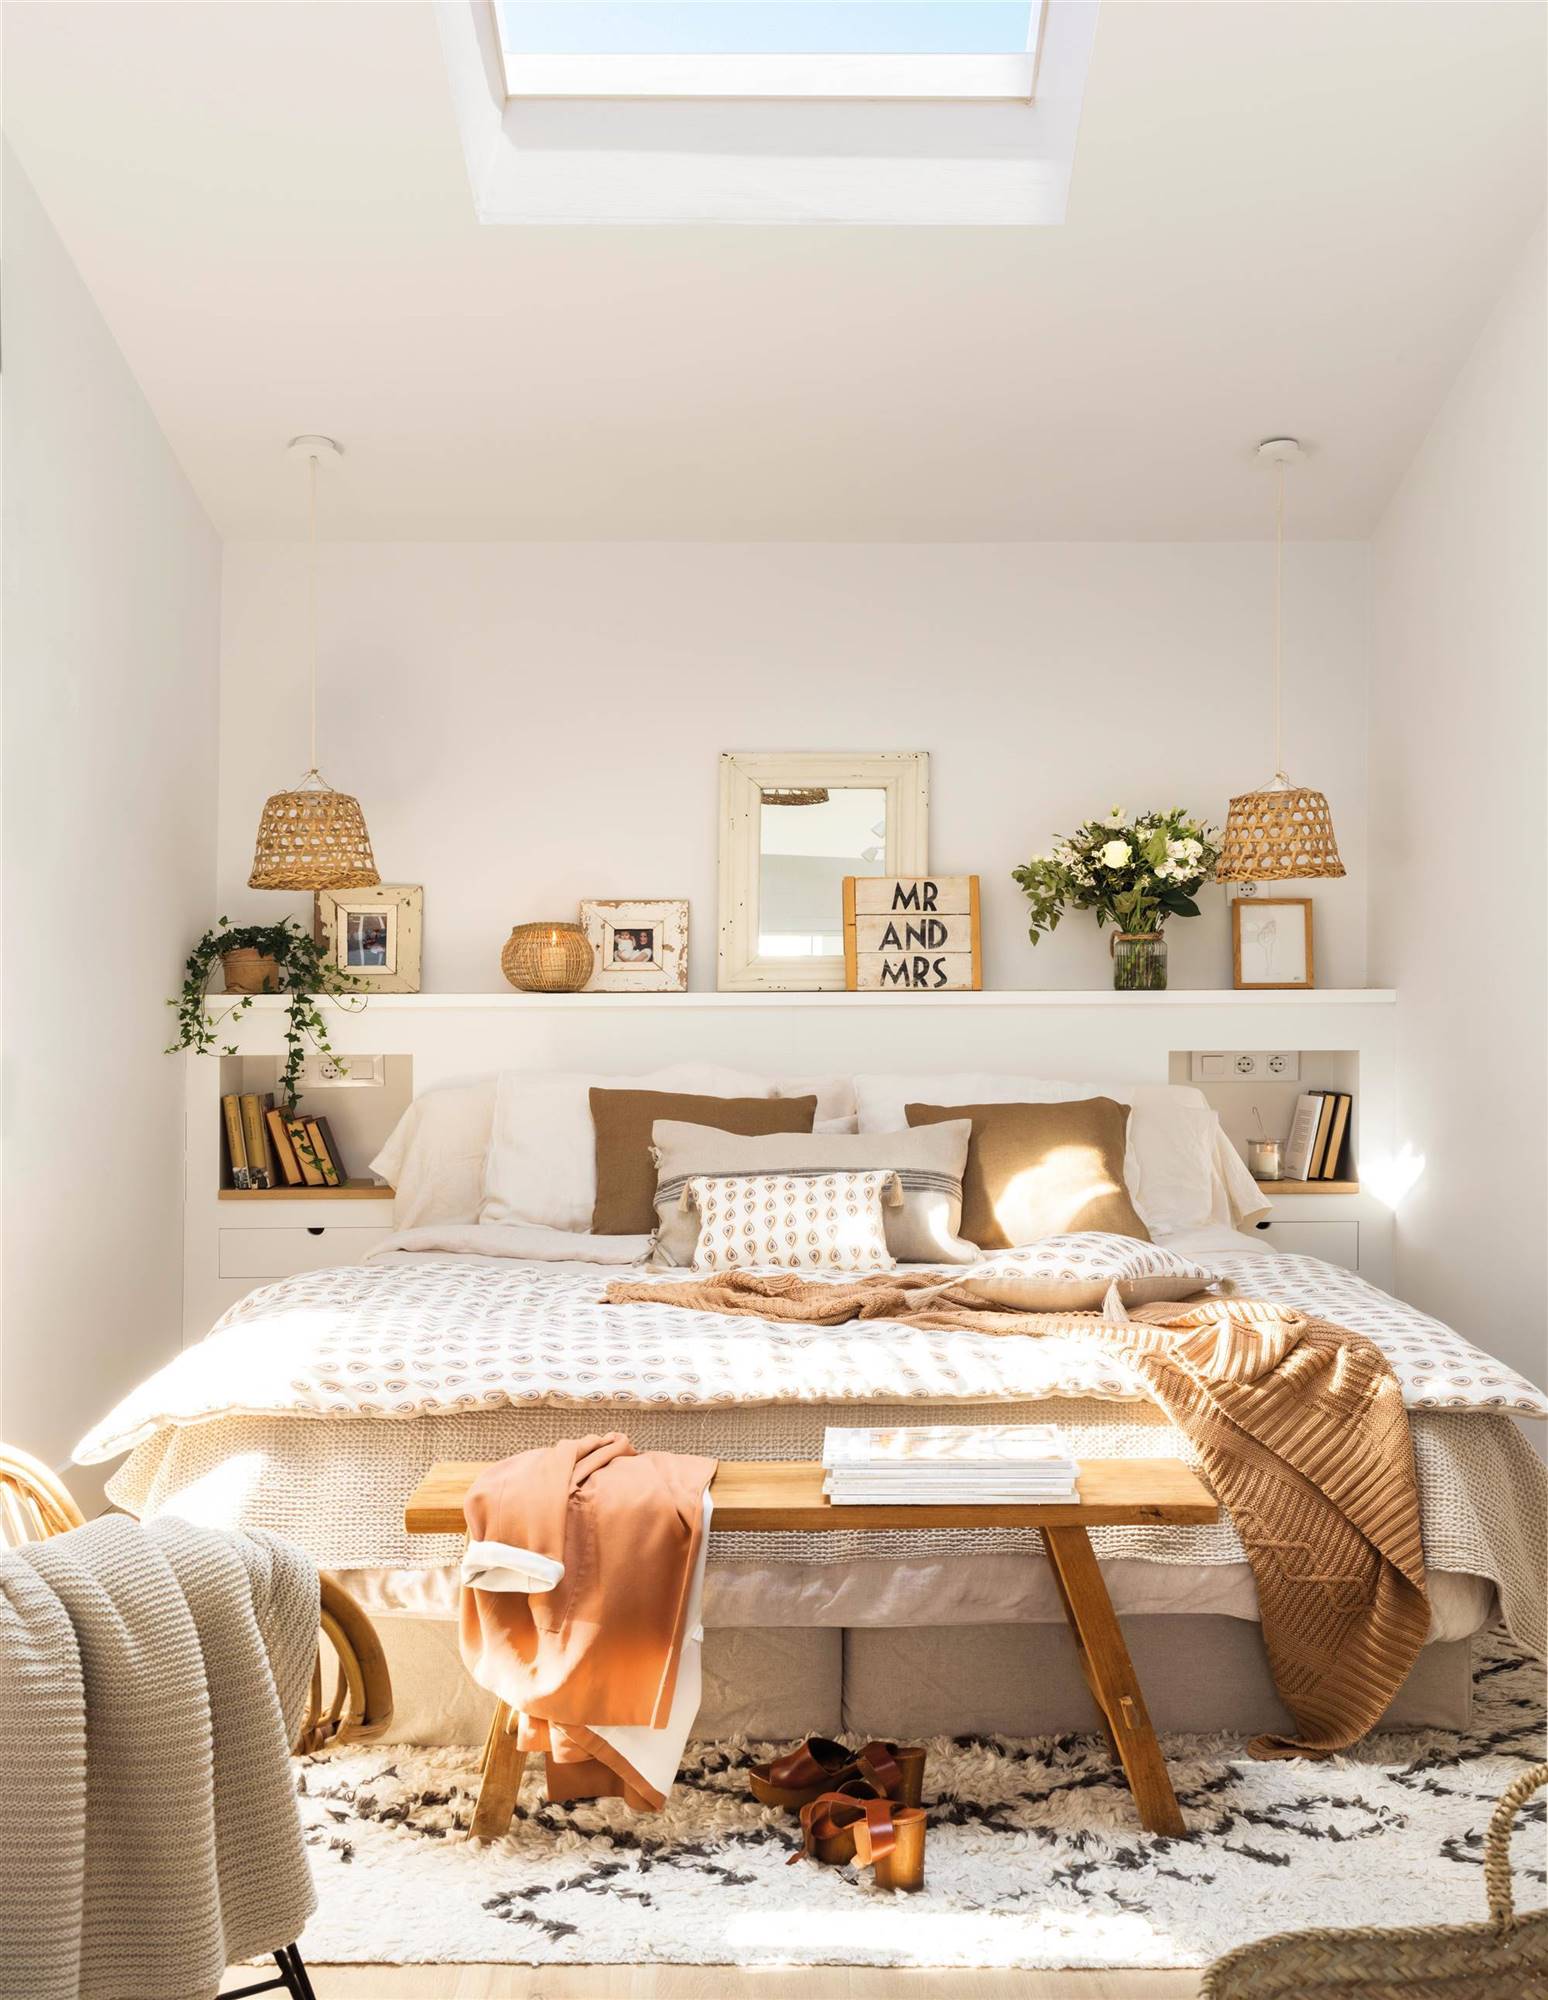 Dormitorio de estilo nórdico con cabecero blanco y banco de madera